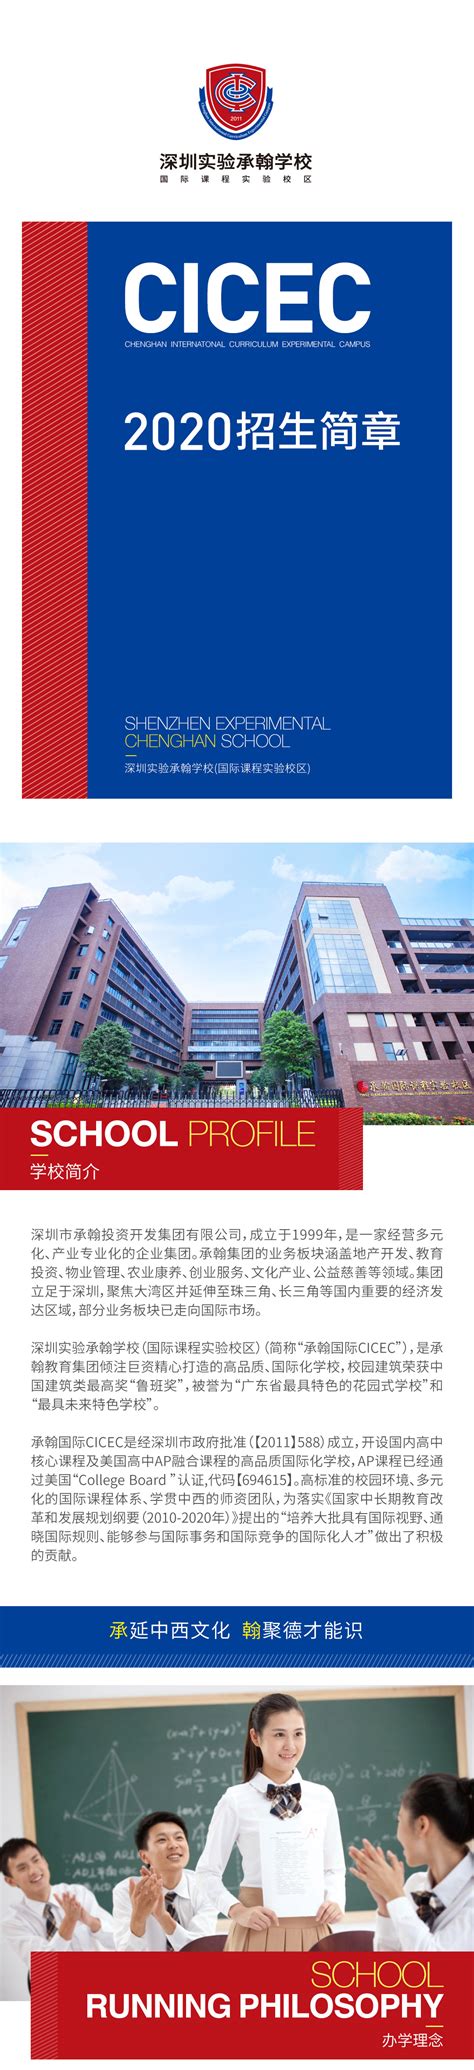 广东海洋大学2021年成人高等教育招生简章-继续教育学院